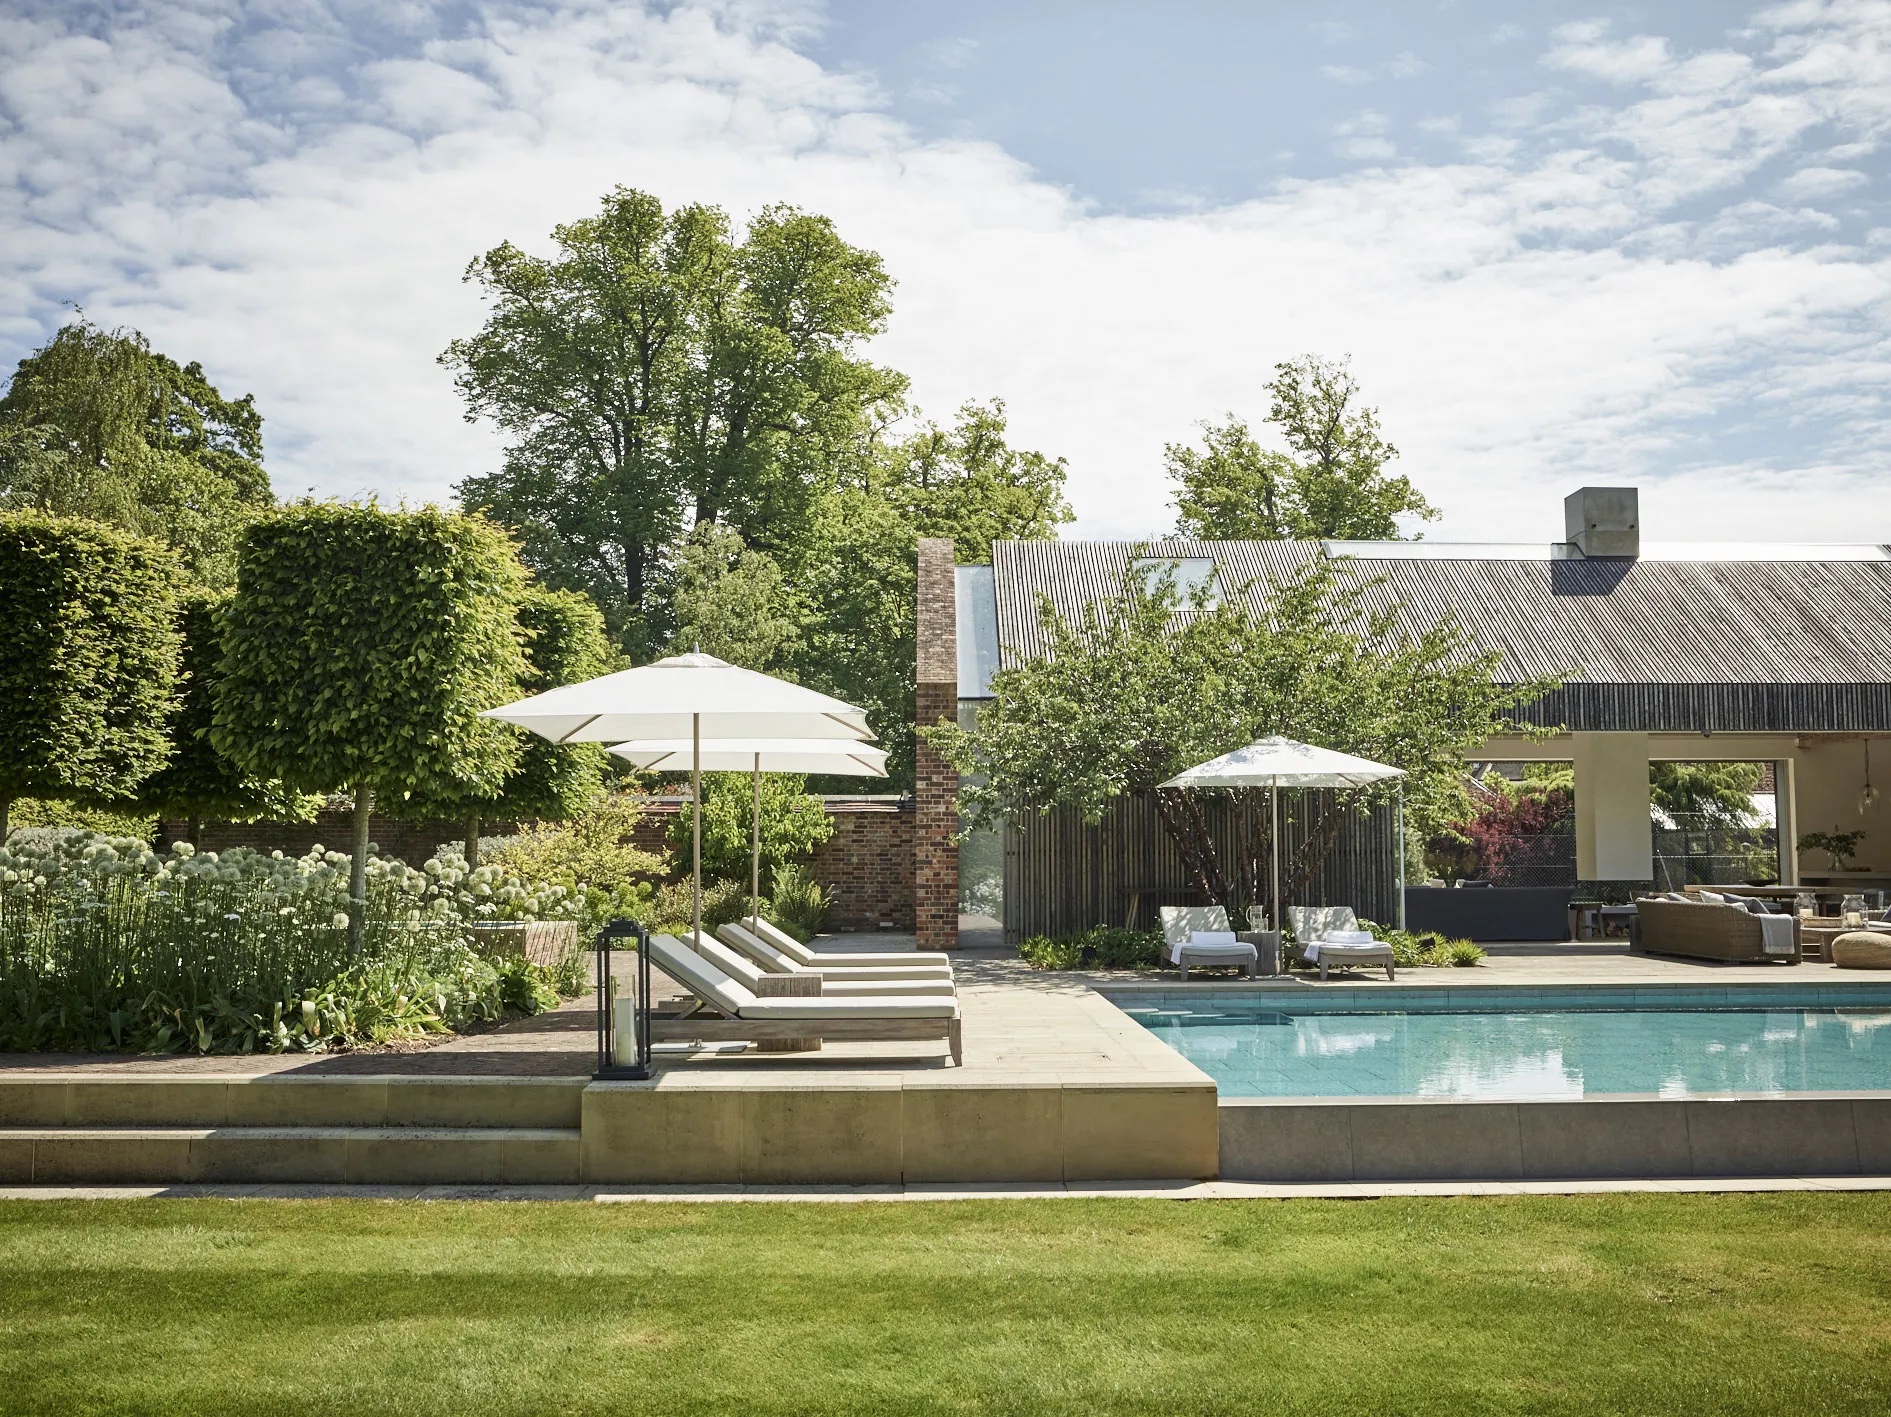 pool-country-garden-outdoor-umbrella-patio-furniture-serene-backyard